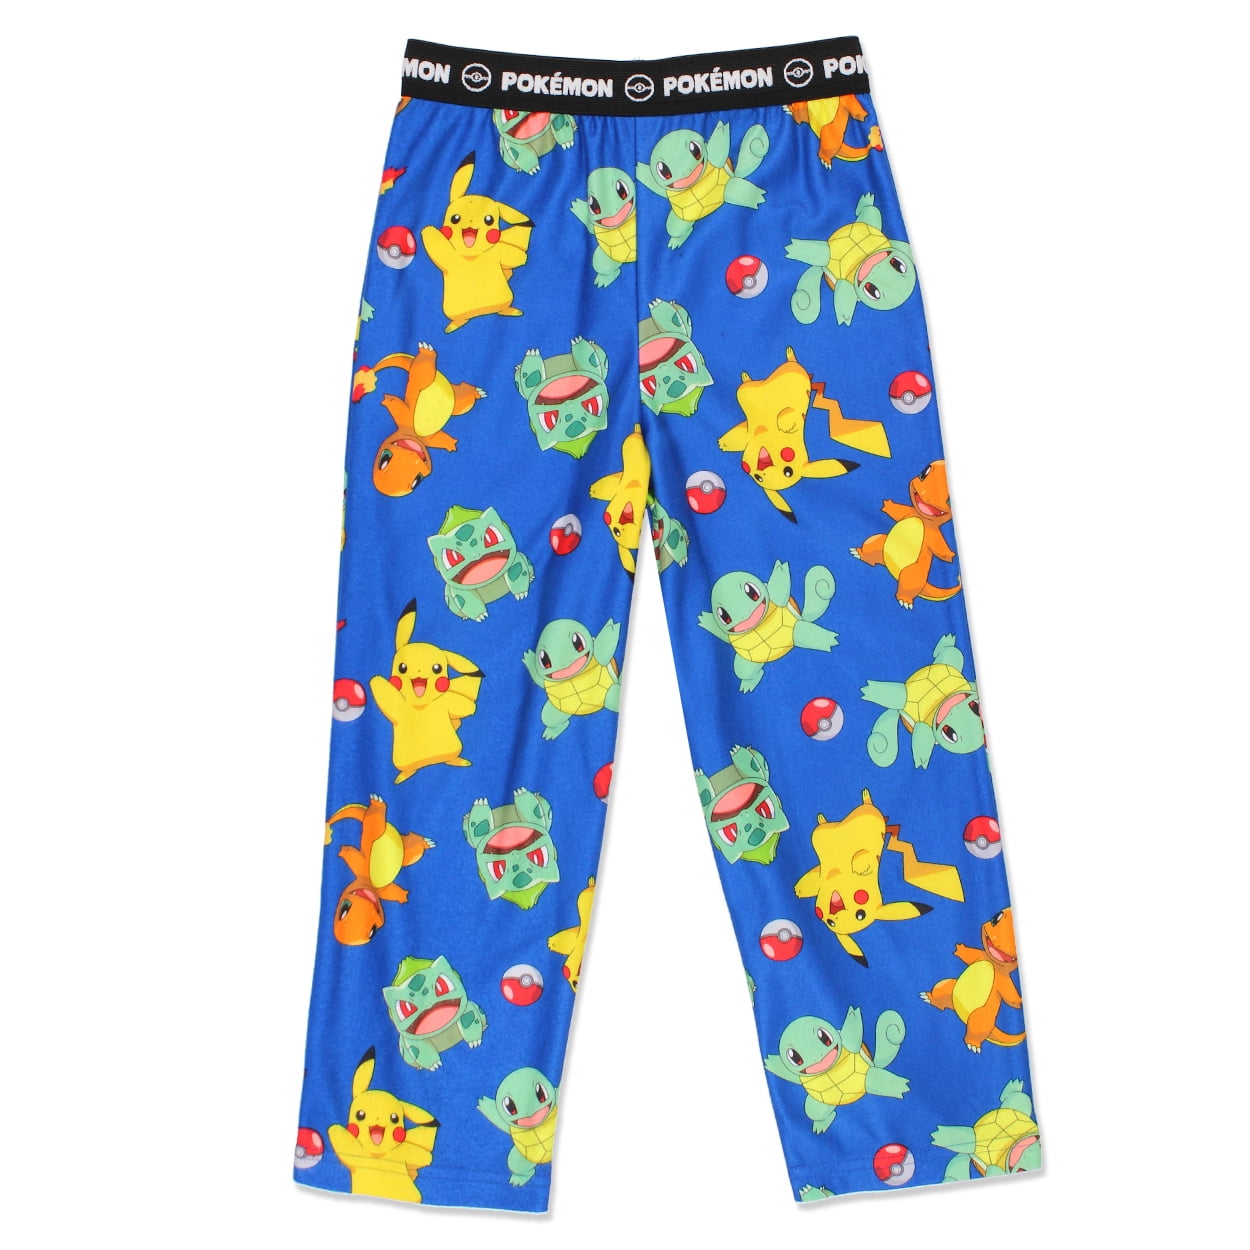 ik ben ziek visie Spijsverteringsorgaan Pokemon Boy's Flannel Pajama Pants (Little Kid/Big Kid) 21PK144BPT -  Walmart.com